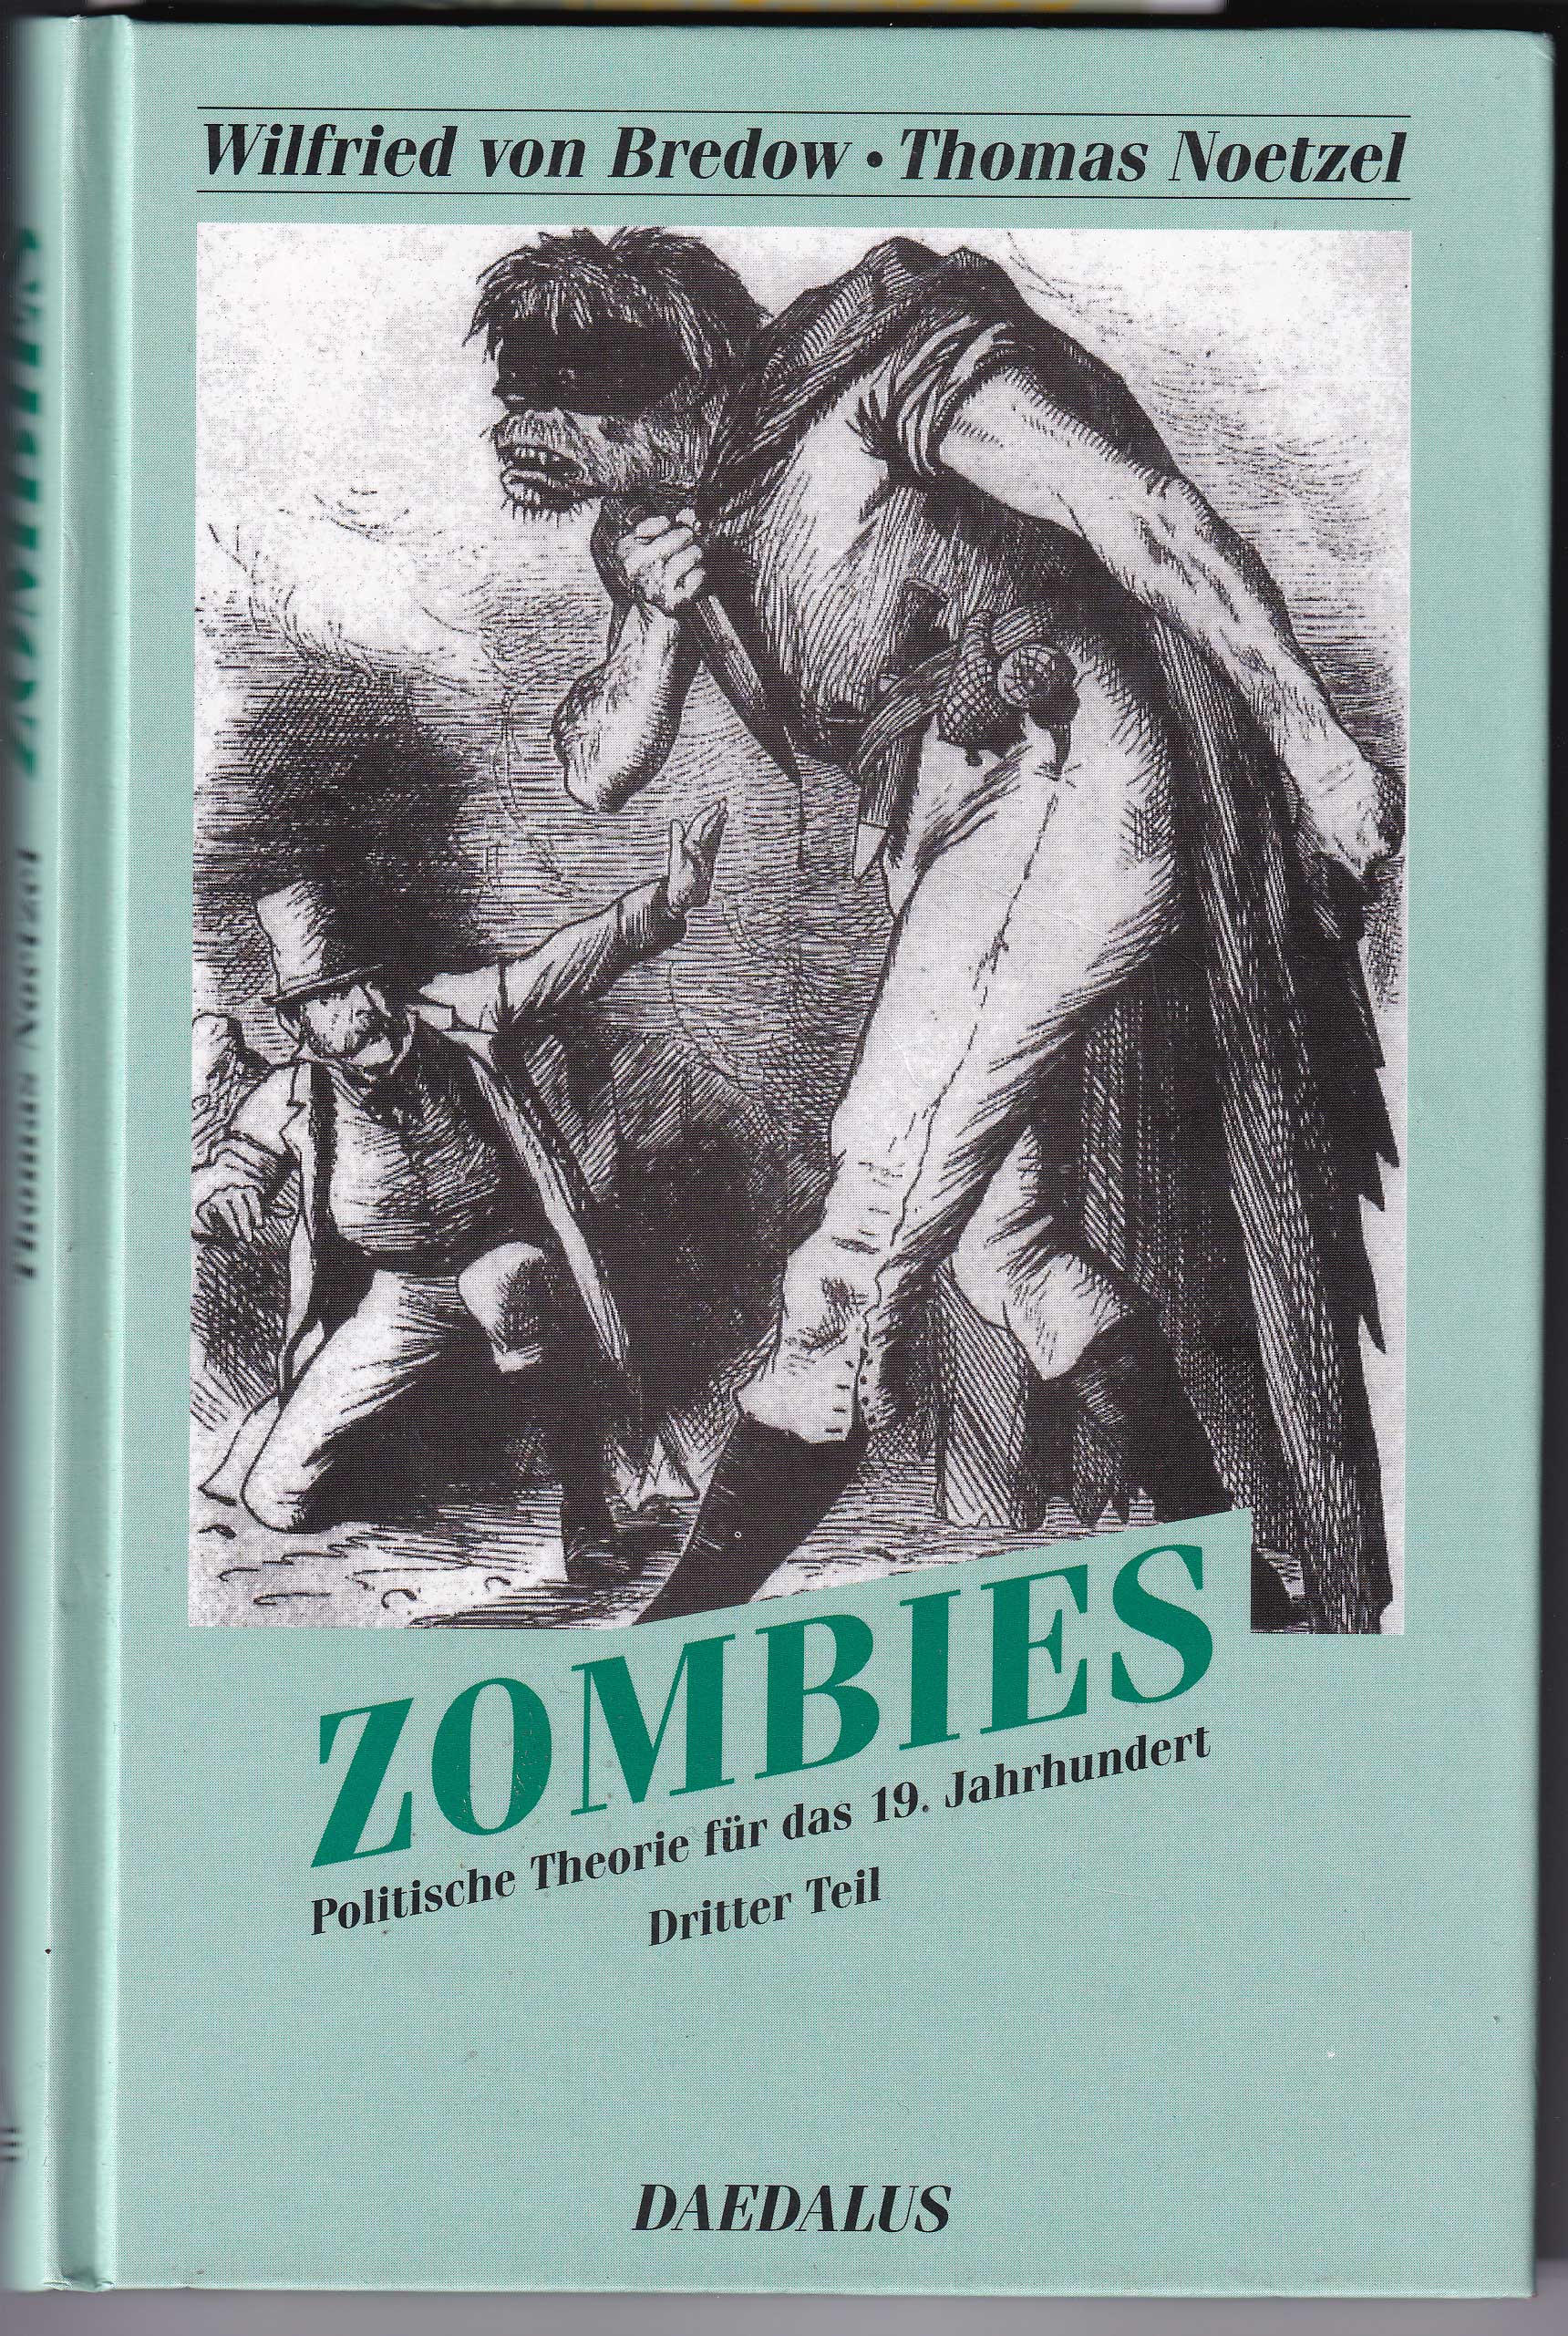 Politische Theorie für das 19. Jahrhundrert, Tel3: Zombies - Bredow, Wilfried von; Noetzel, Thomas